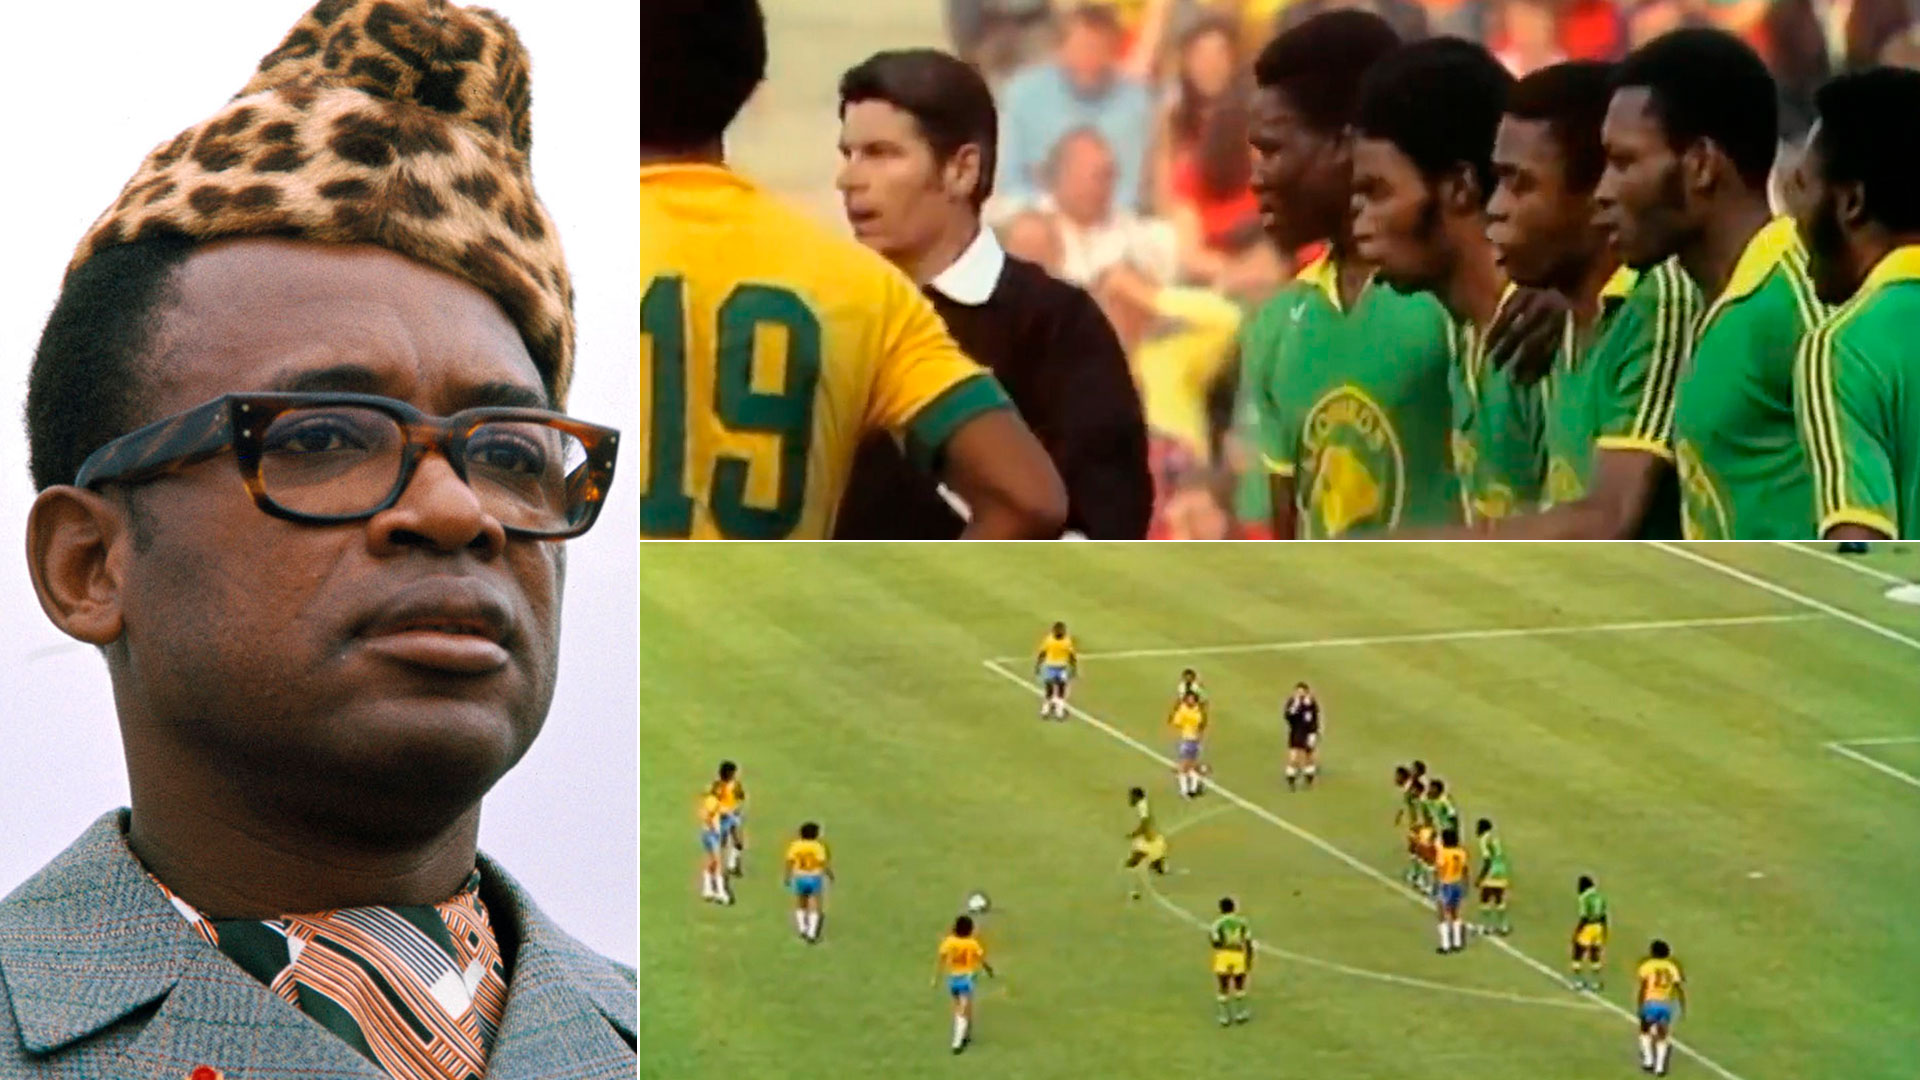 La historia detrás del “grito de desesperación” que se convirtió en la jugada más insólita de los Mundiales